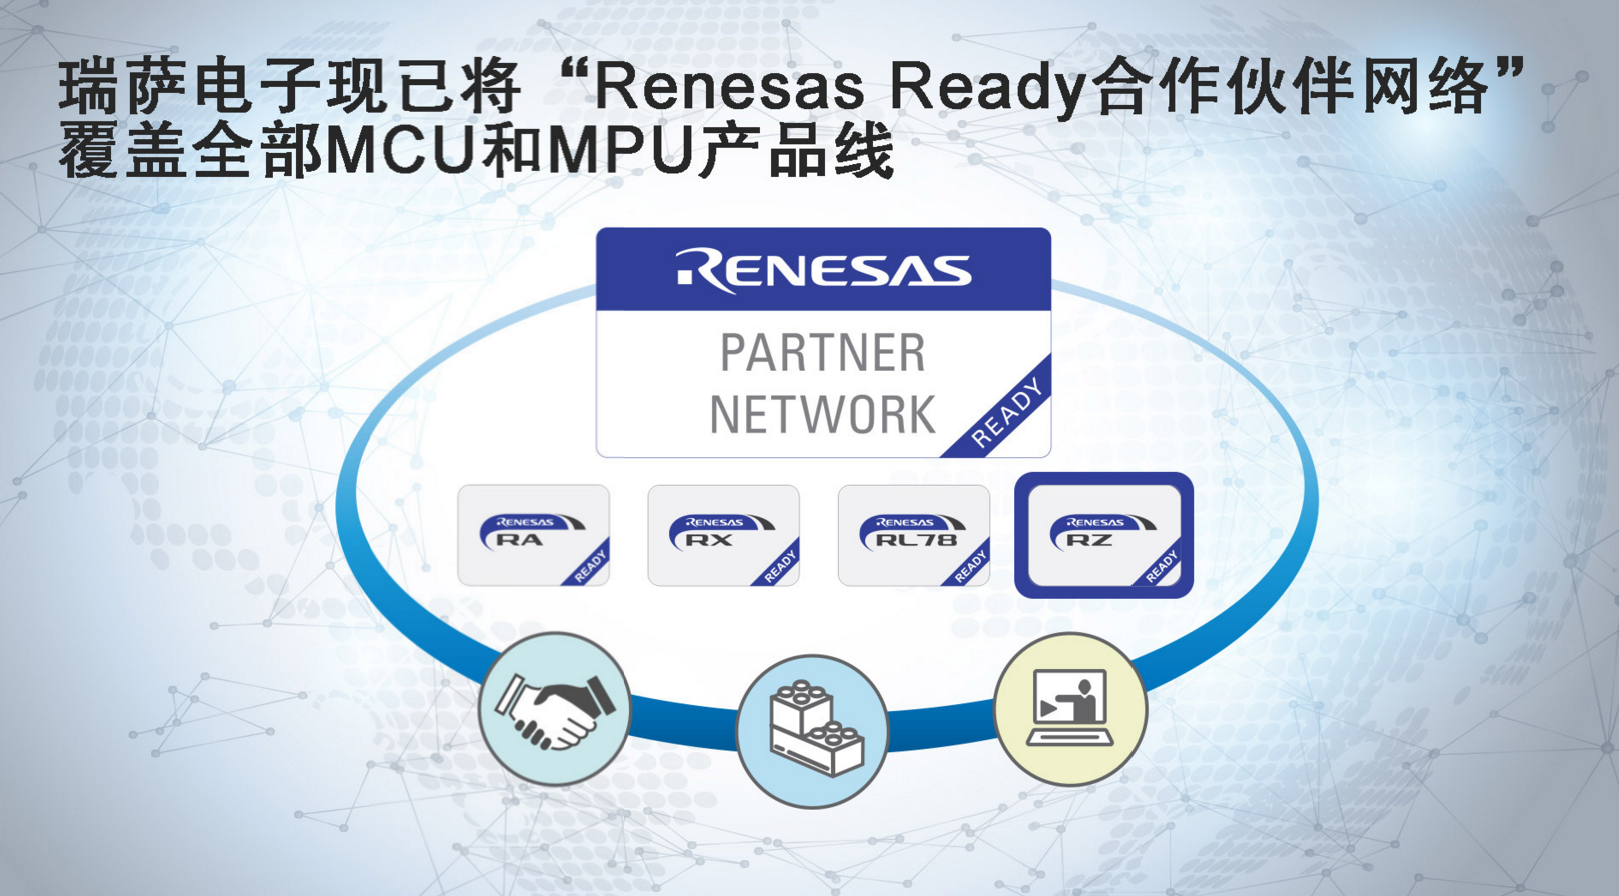 瑞萨电子现已将“Renesas Ready合作伙伴网络” 覆盖全部MCU和MPU产品线